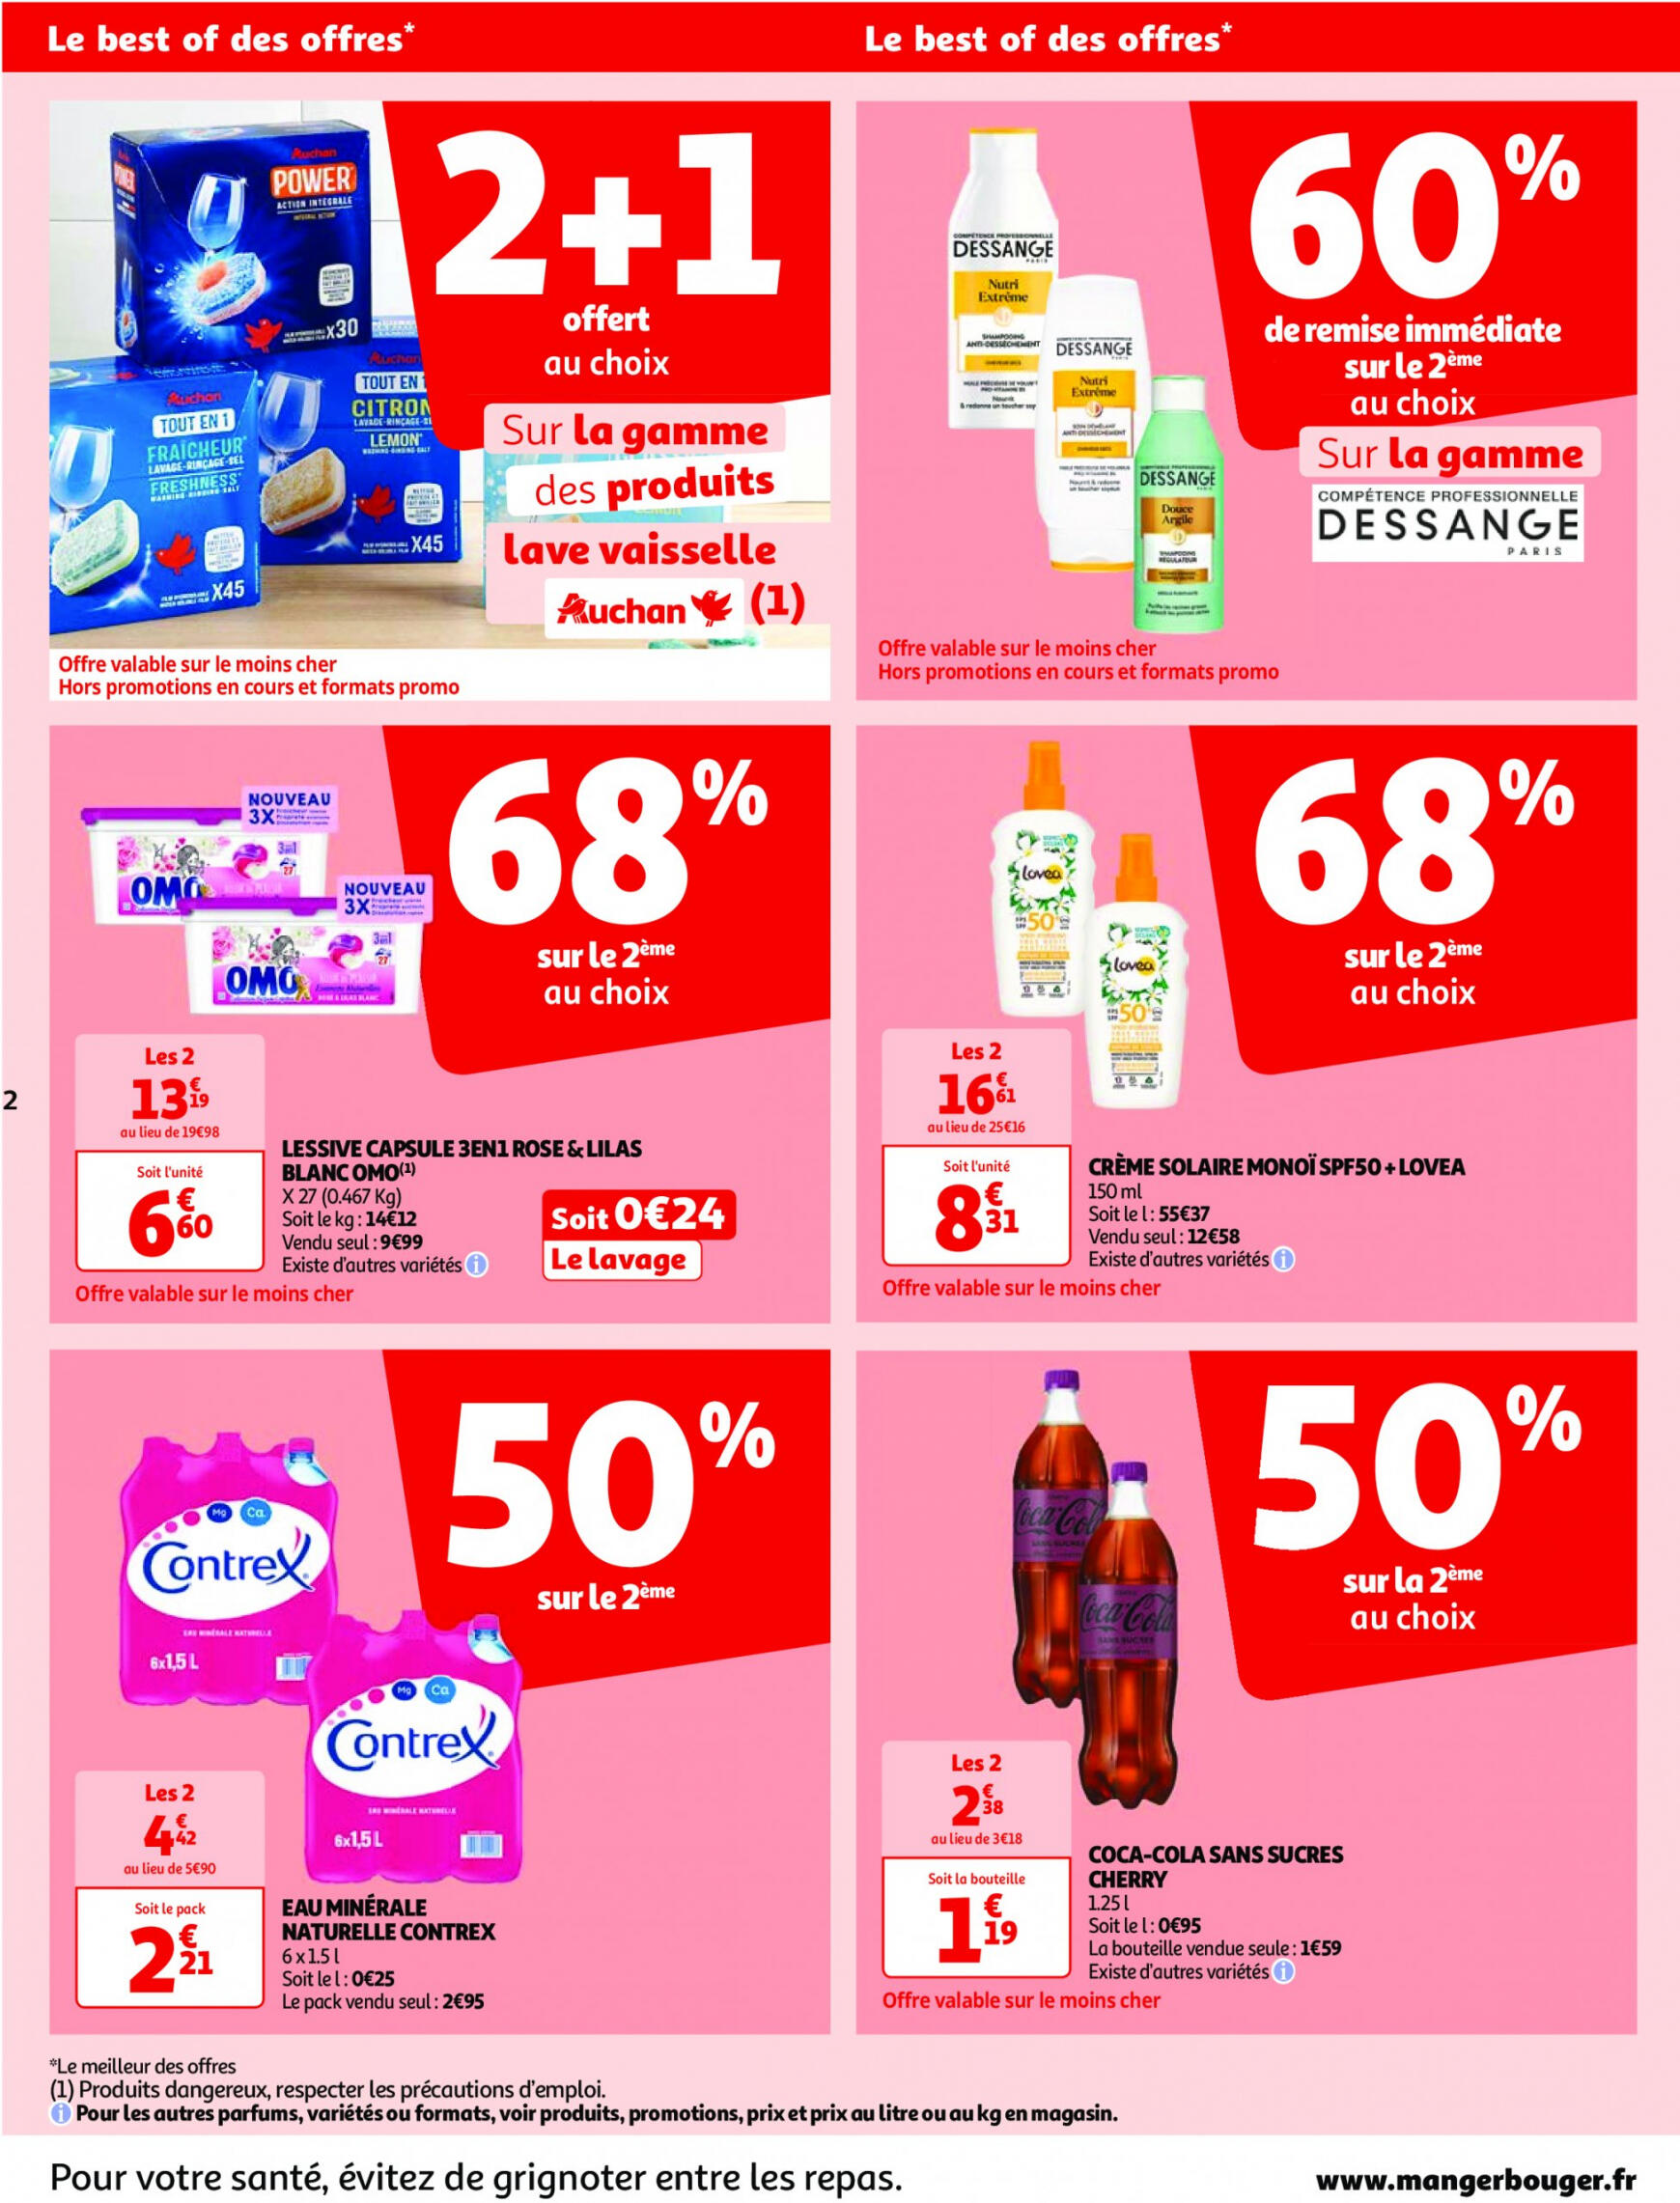 auchan - Prospectus Auchan actuel 14.05. - 21.05. - page: 2